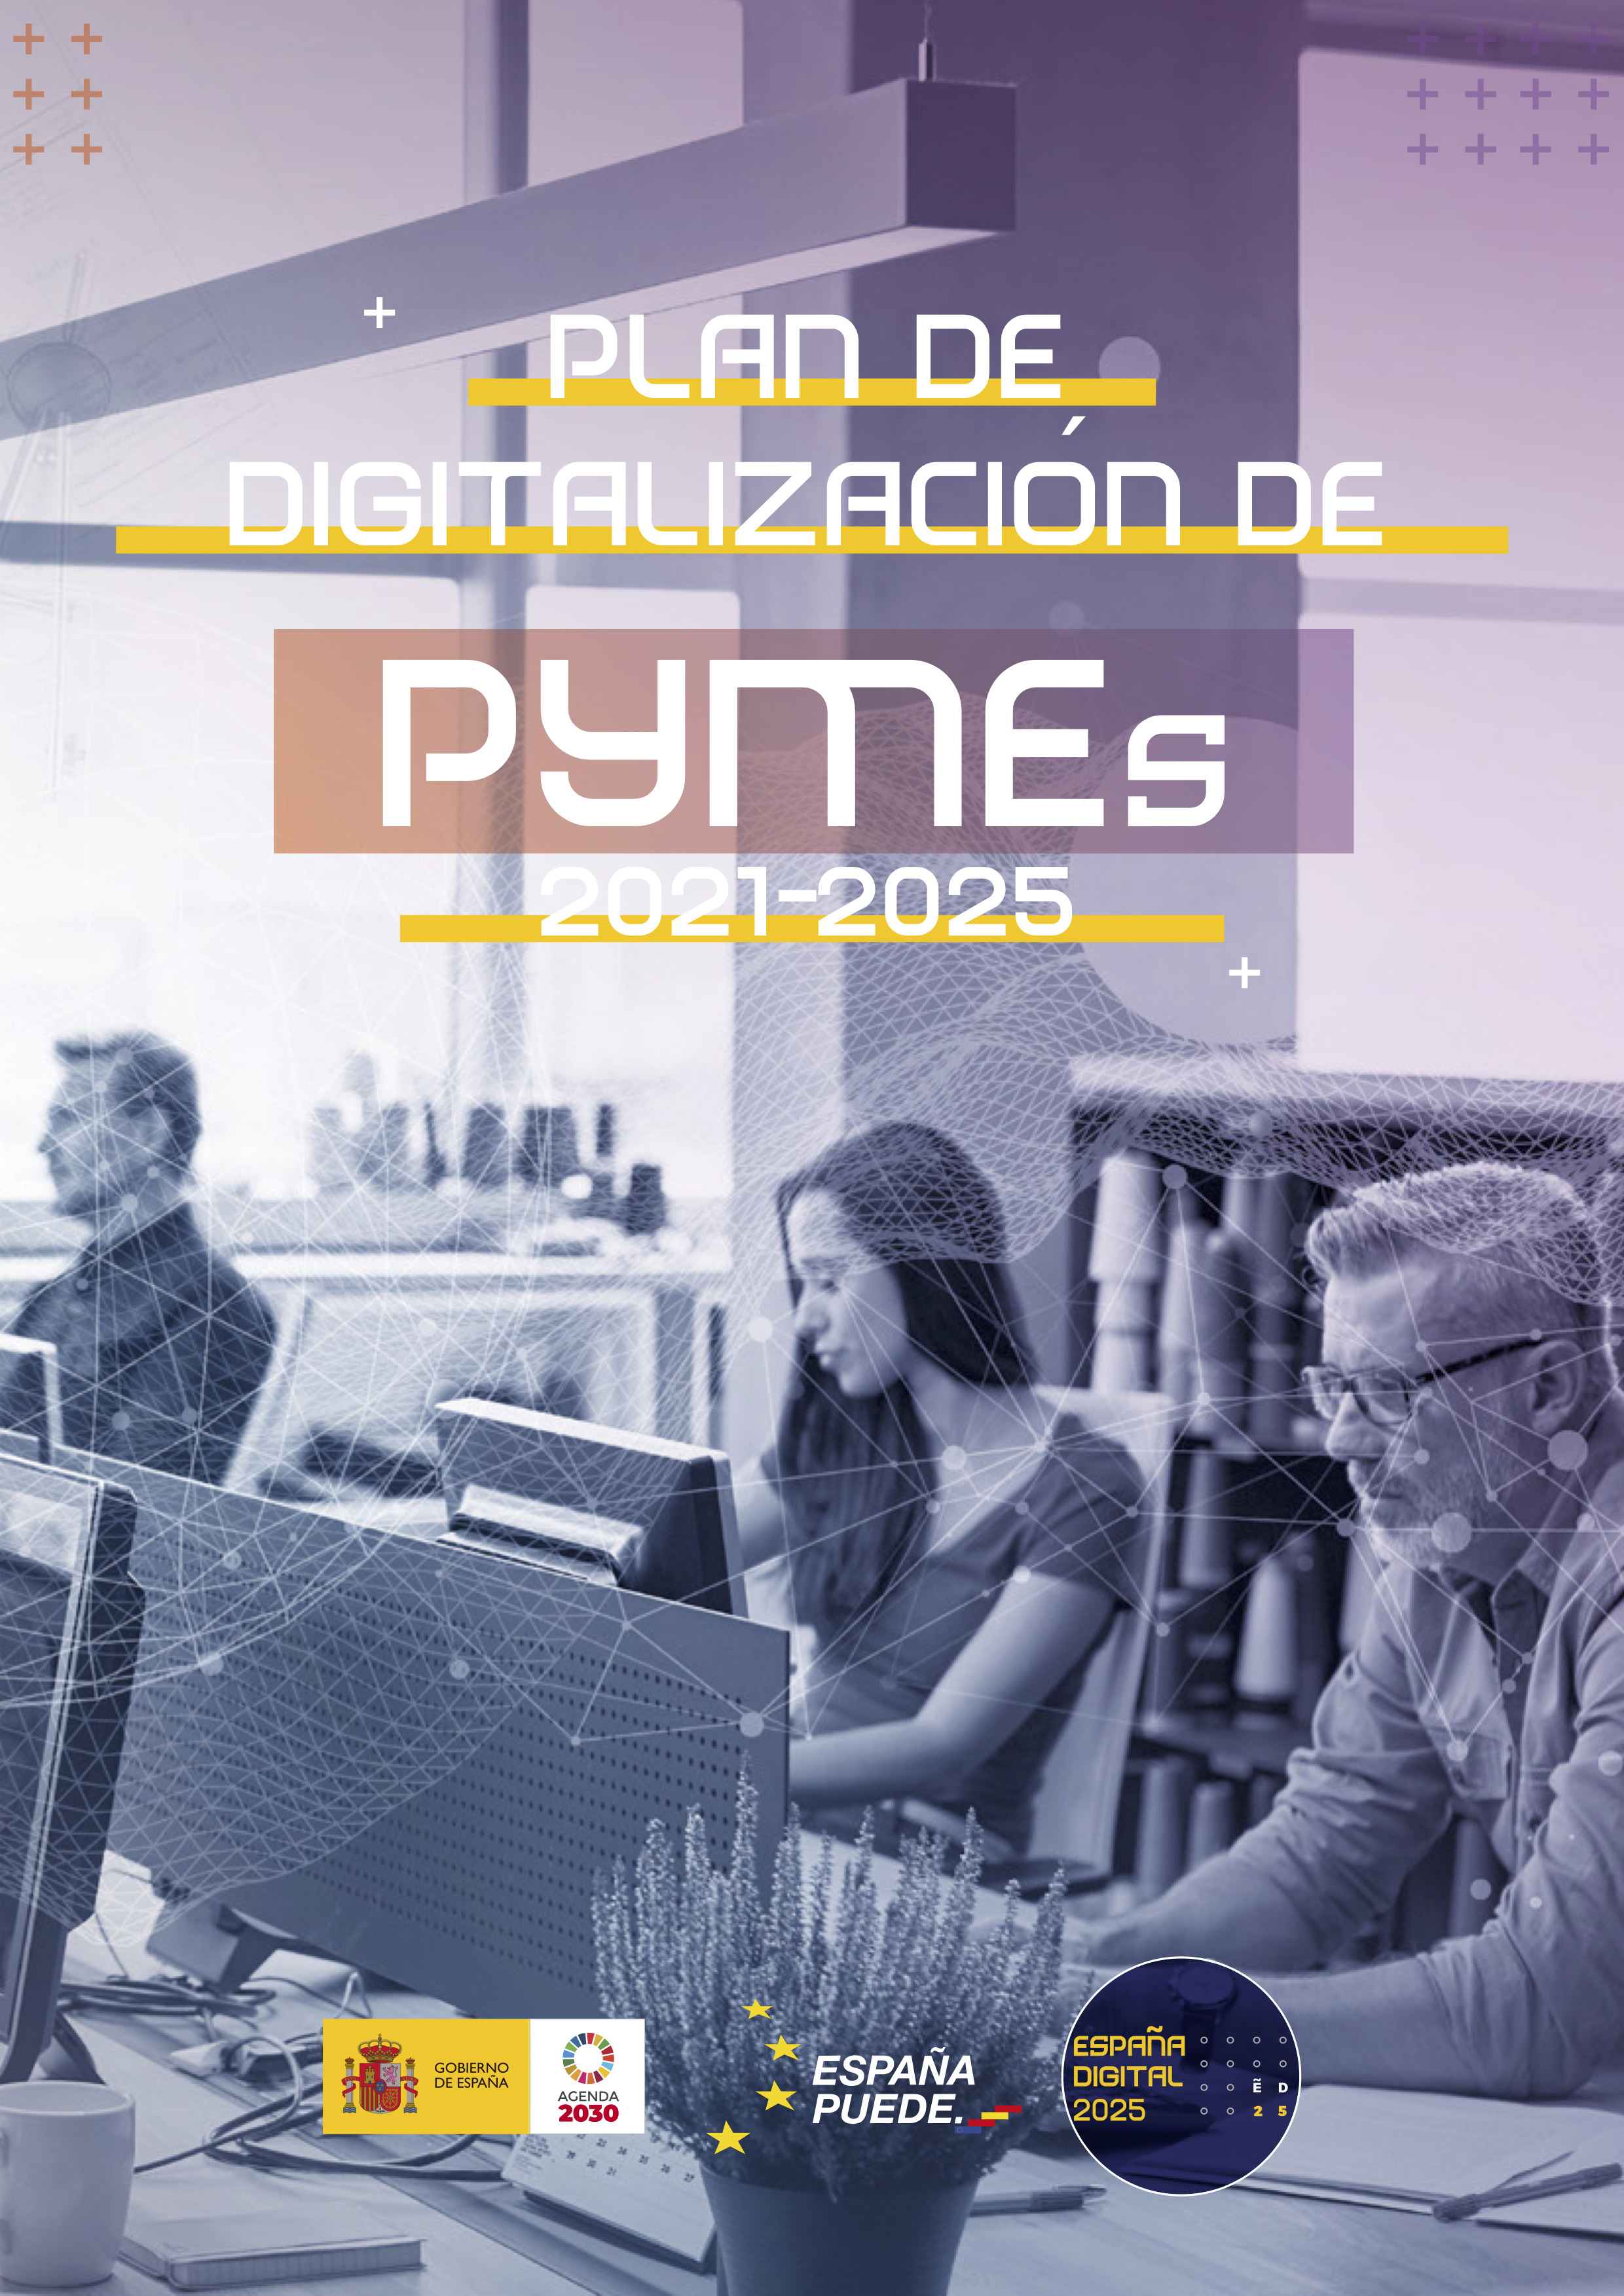 Icono Plan de Digitalización de pymes 2021-2025